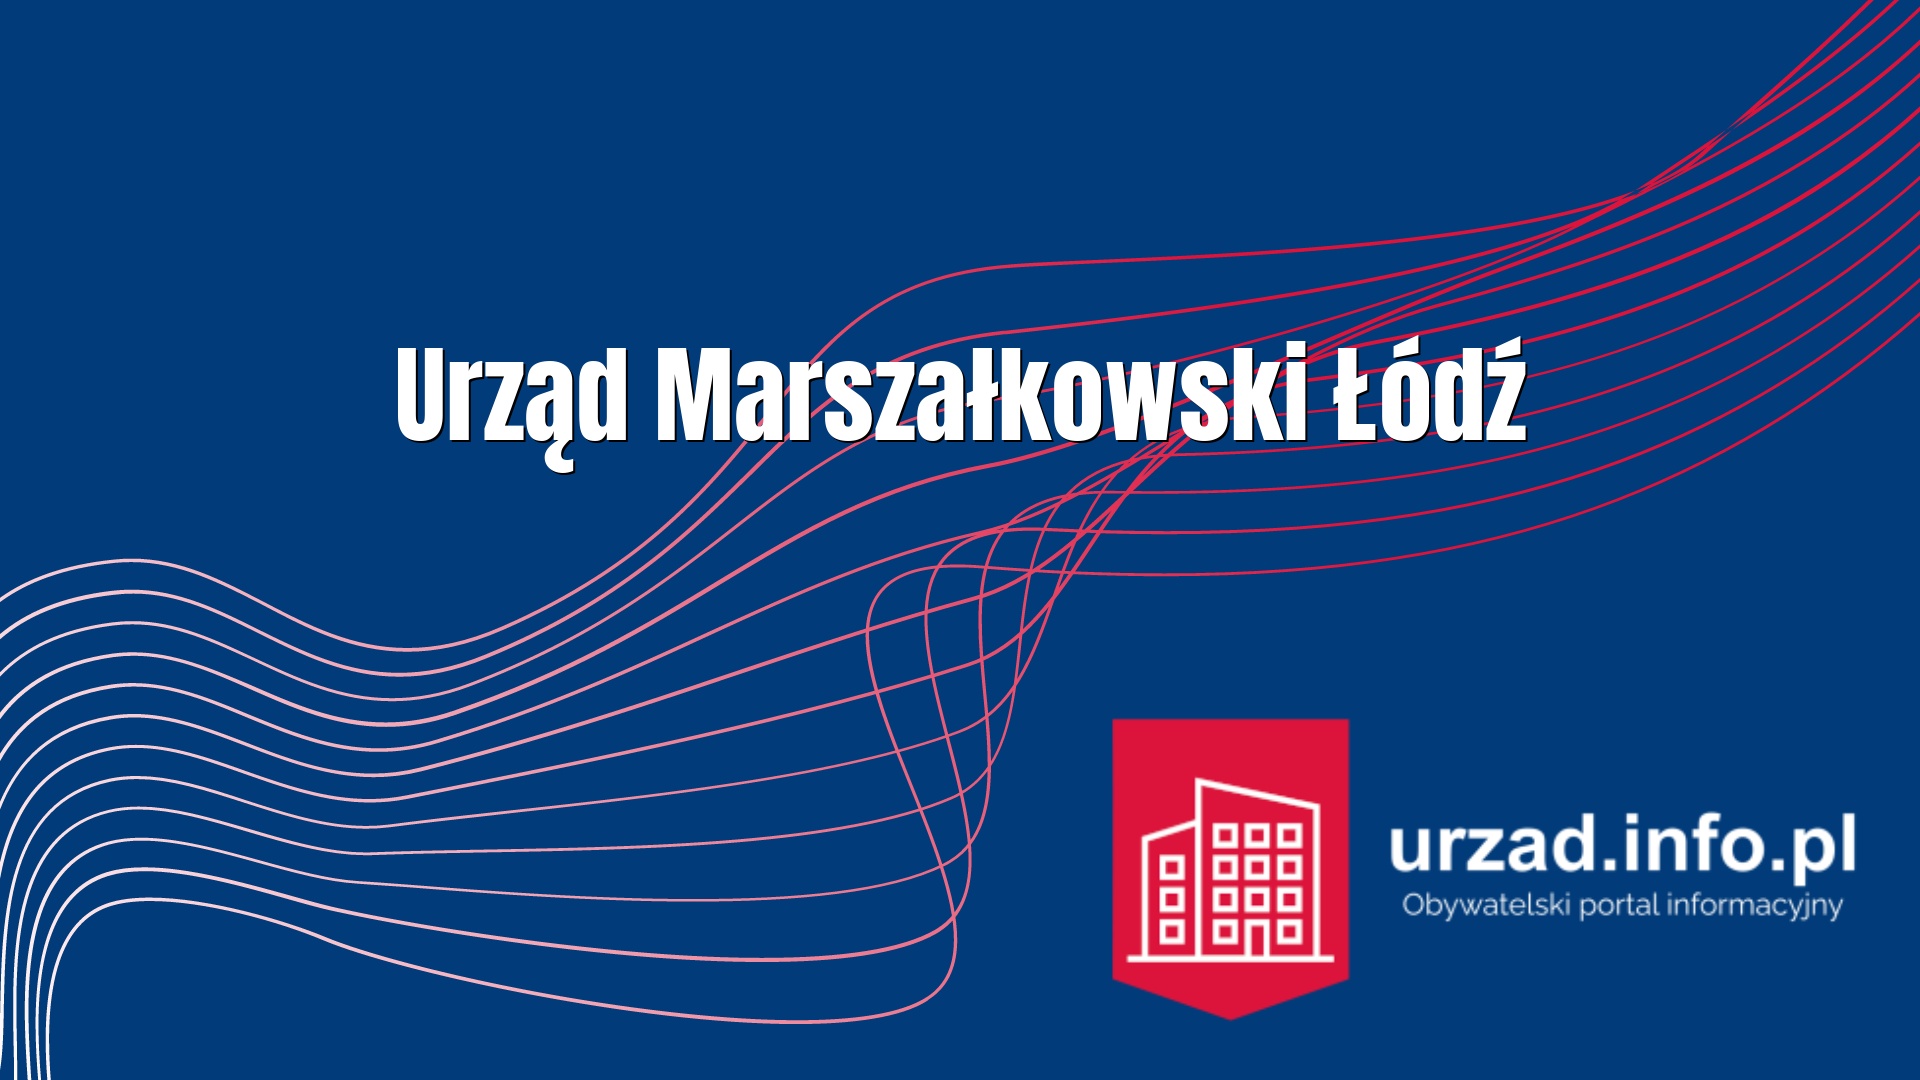 Urząd Marszałkowski Łódź